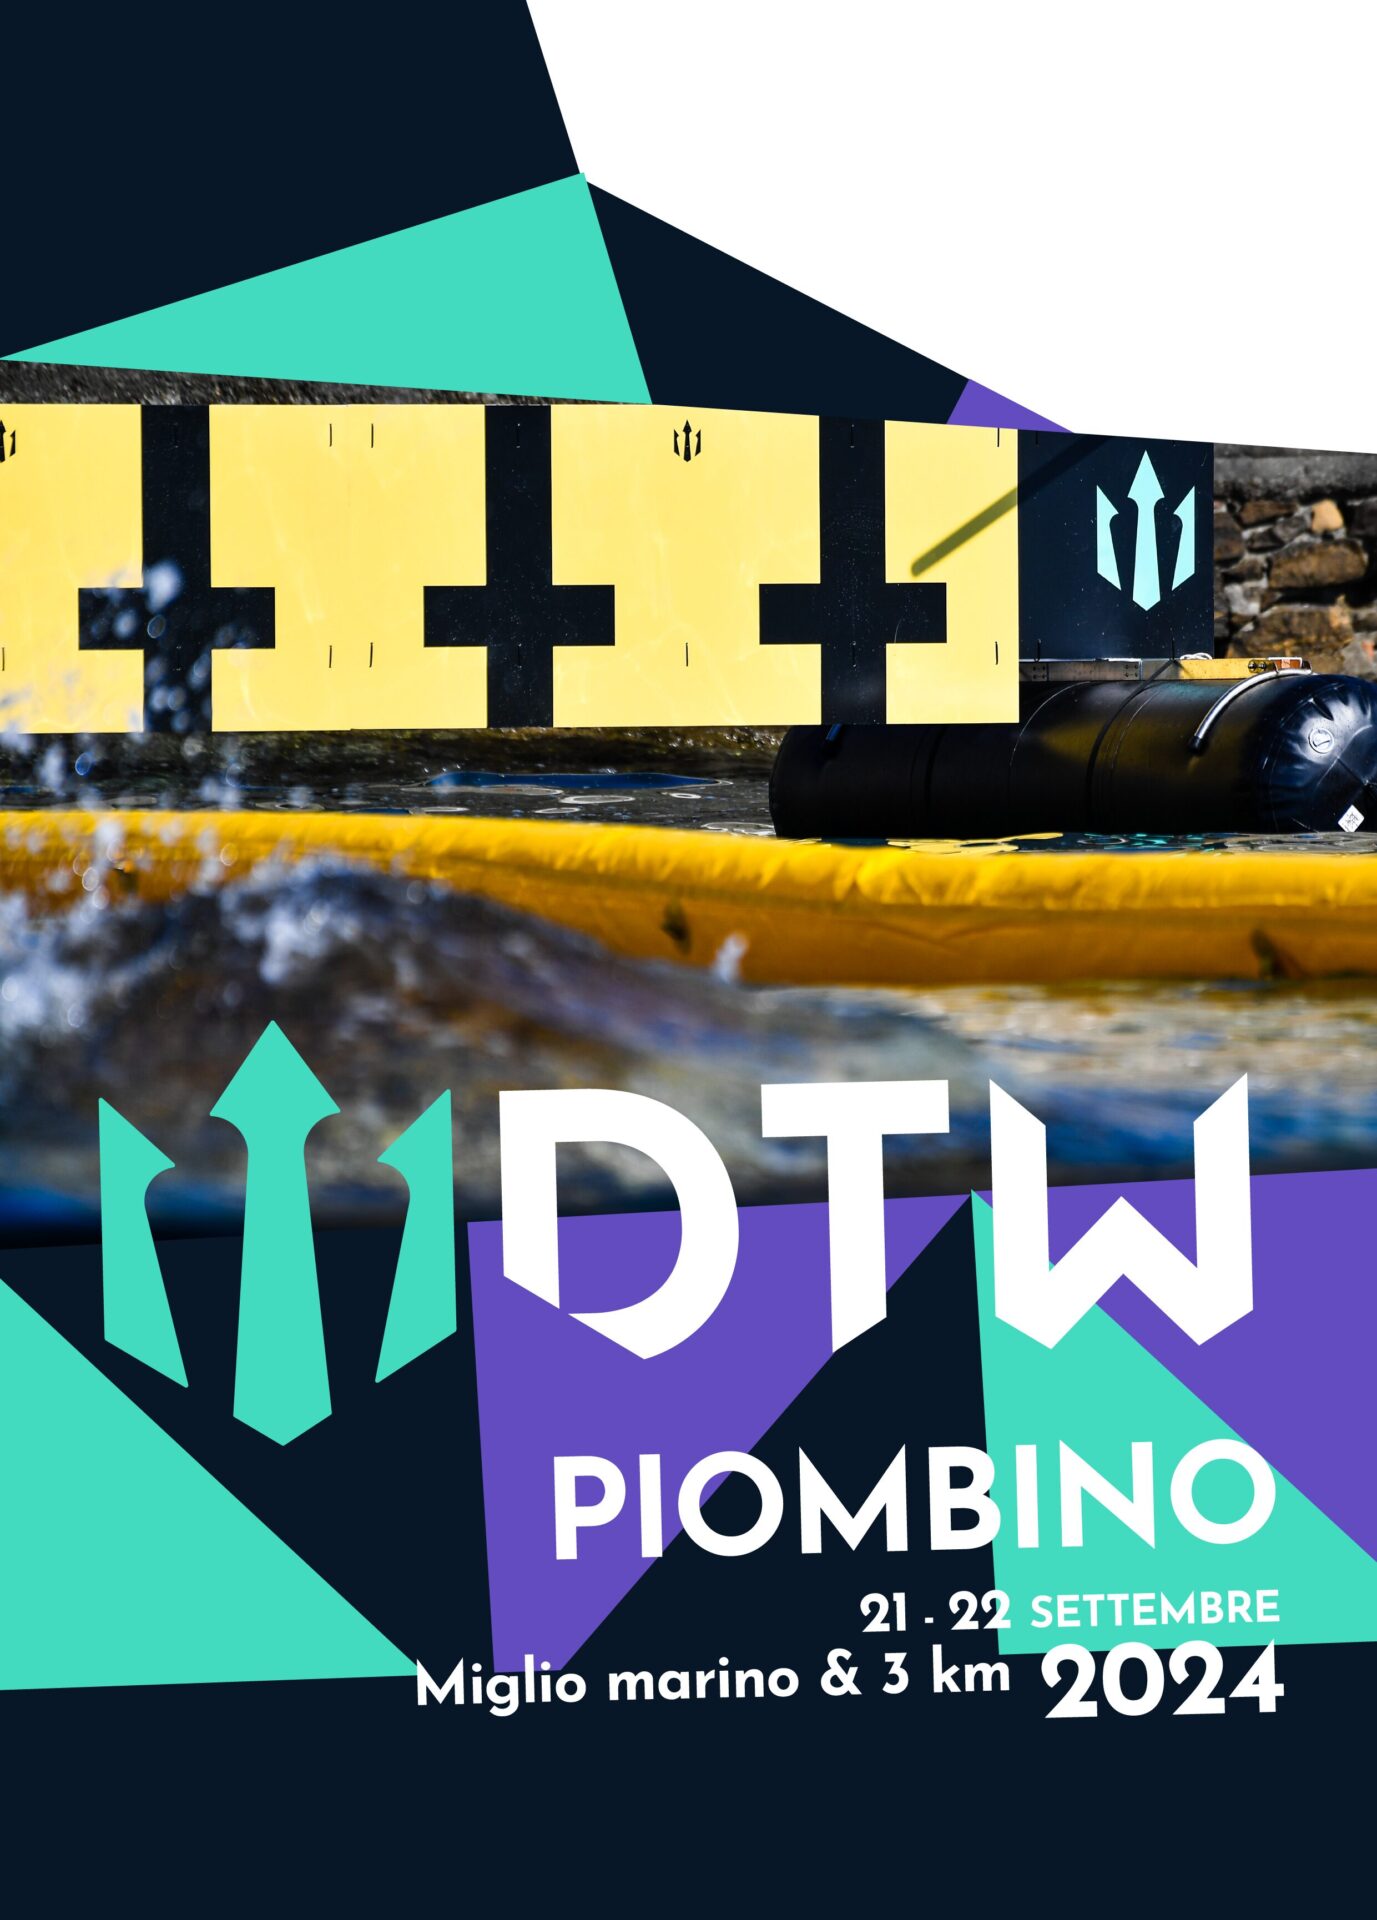 DTW Piombino 2024 swim open water